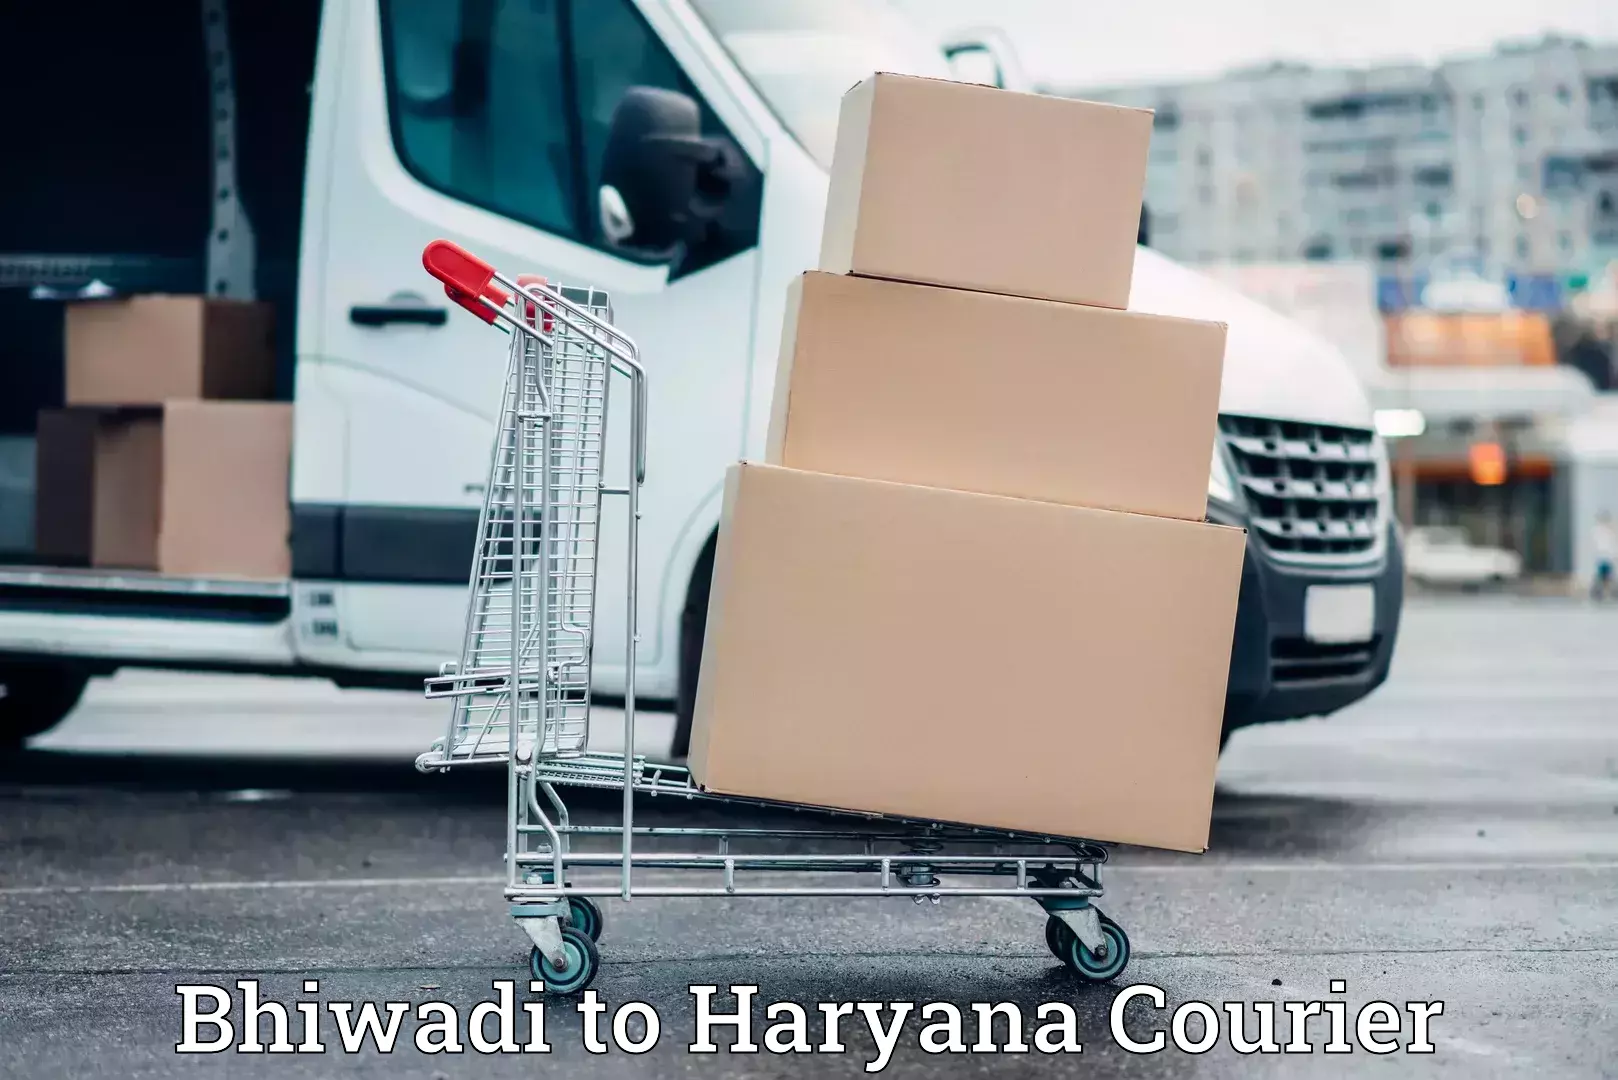 Furniture transport experts Bhiwadi to Haryana